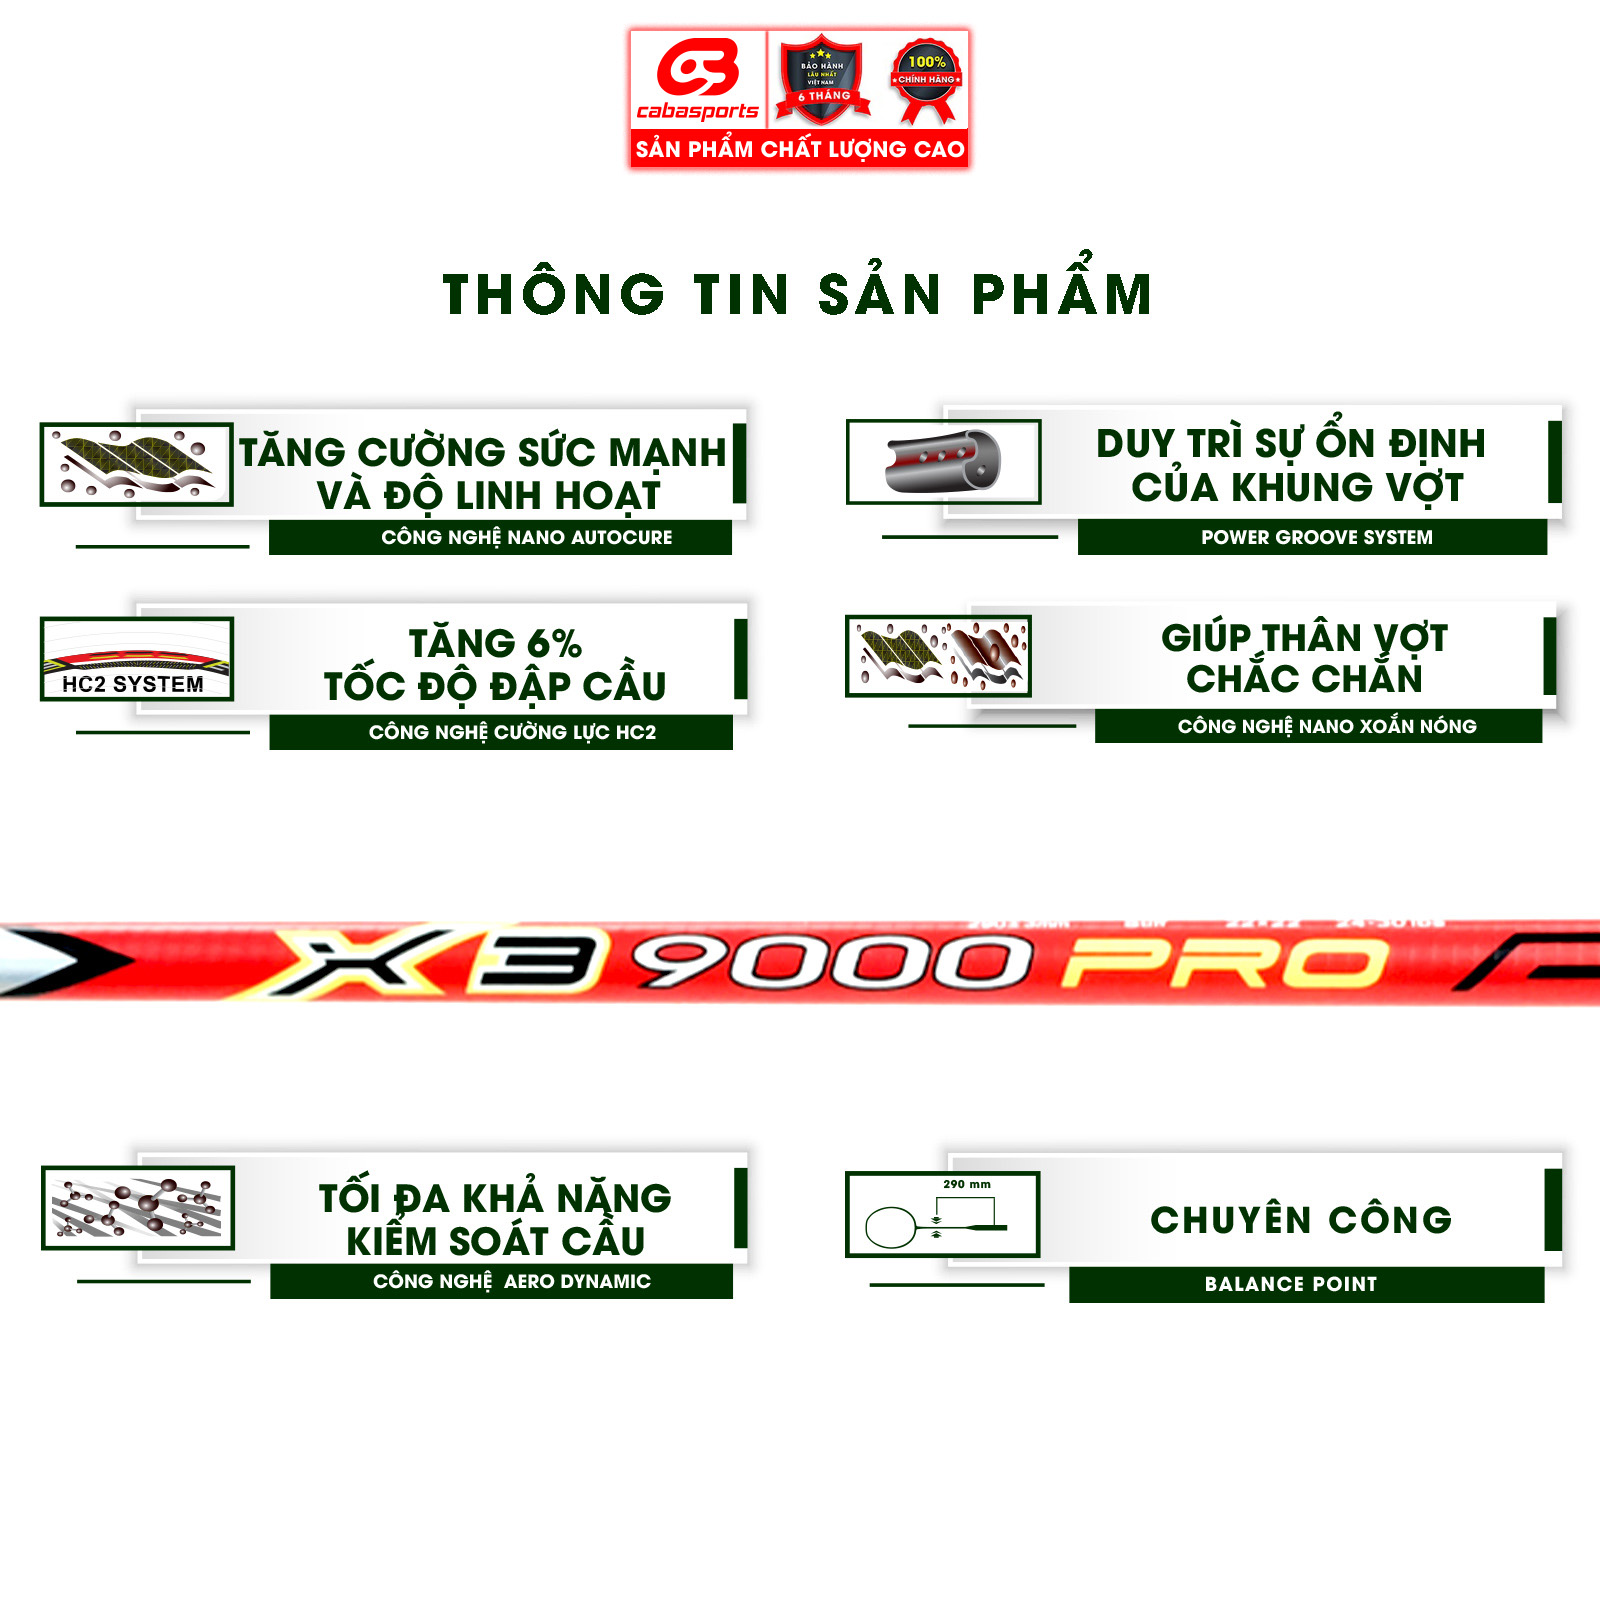 Vợt cầu lông ProKennex X3 9000 PRO carbon cao cấp chính hãng chuyên công mạnh mẽ